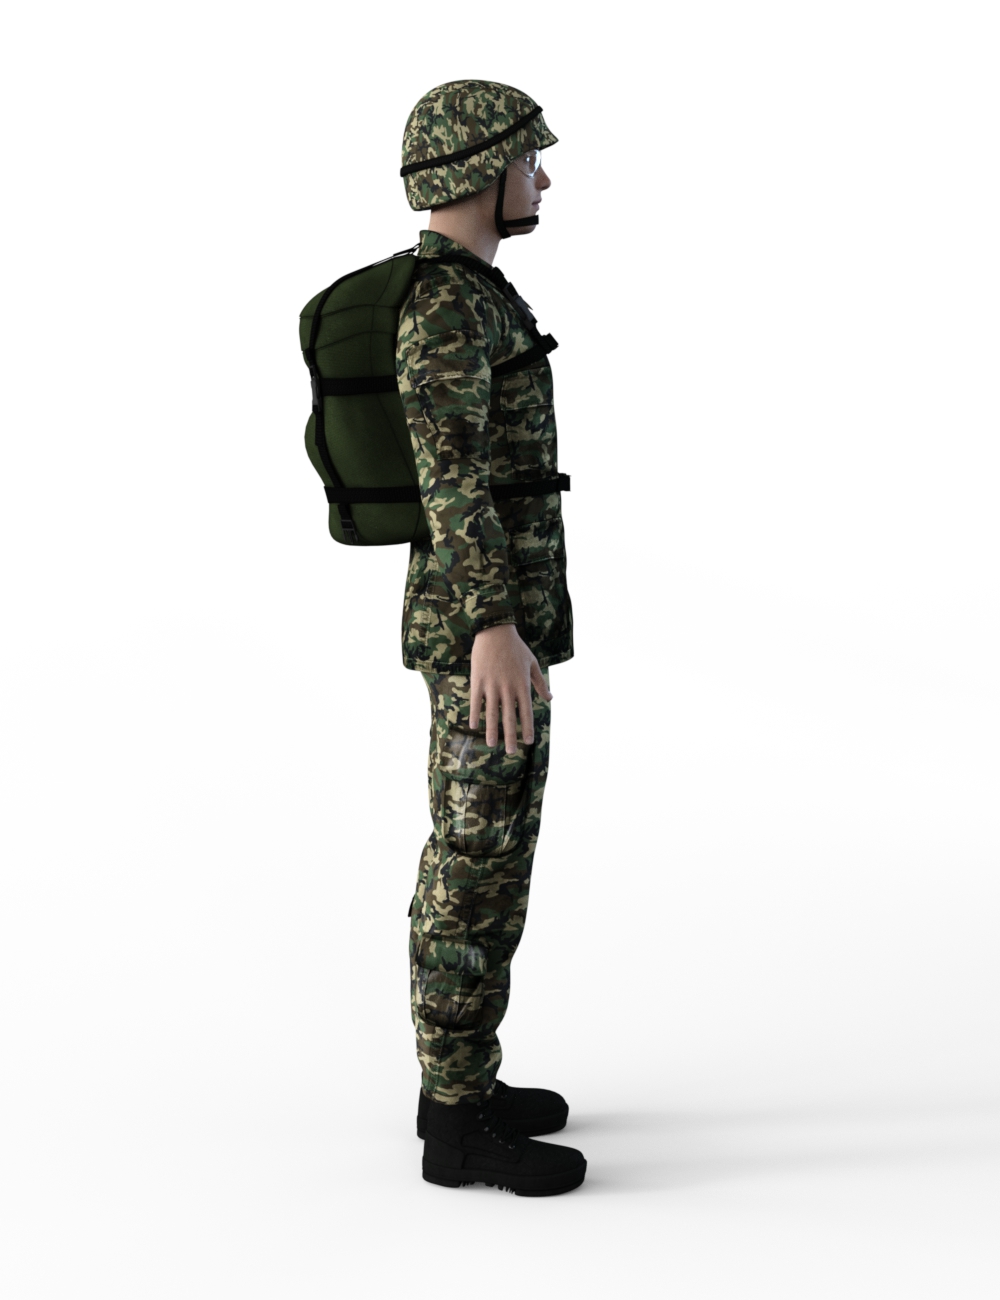 FBX- Base Male Army Uniform by: Paleo, 3D Models by Daz 3D